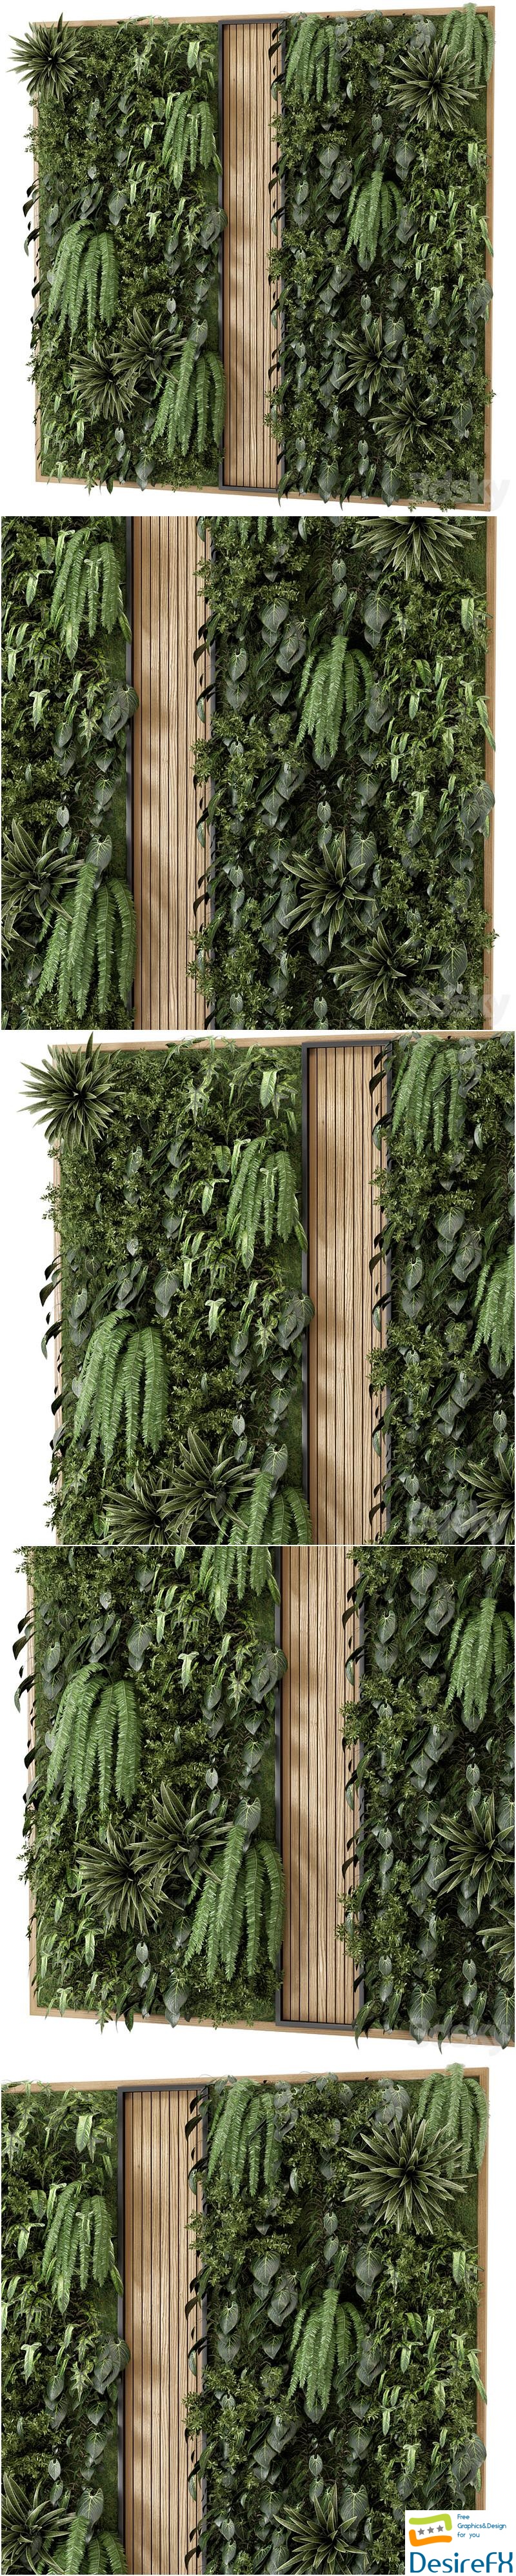 Indoor Wall Vertical Garden in Wooden Base - Set 638 3D Model